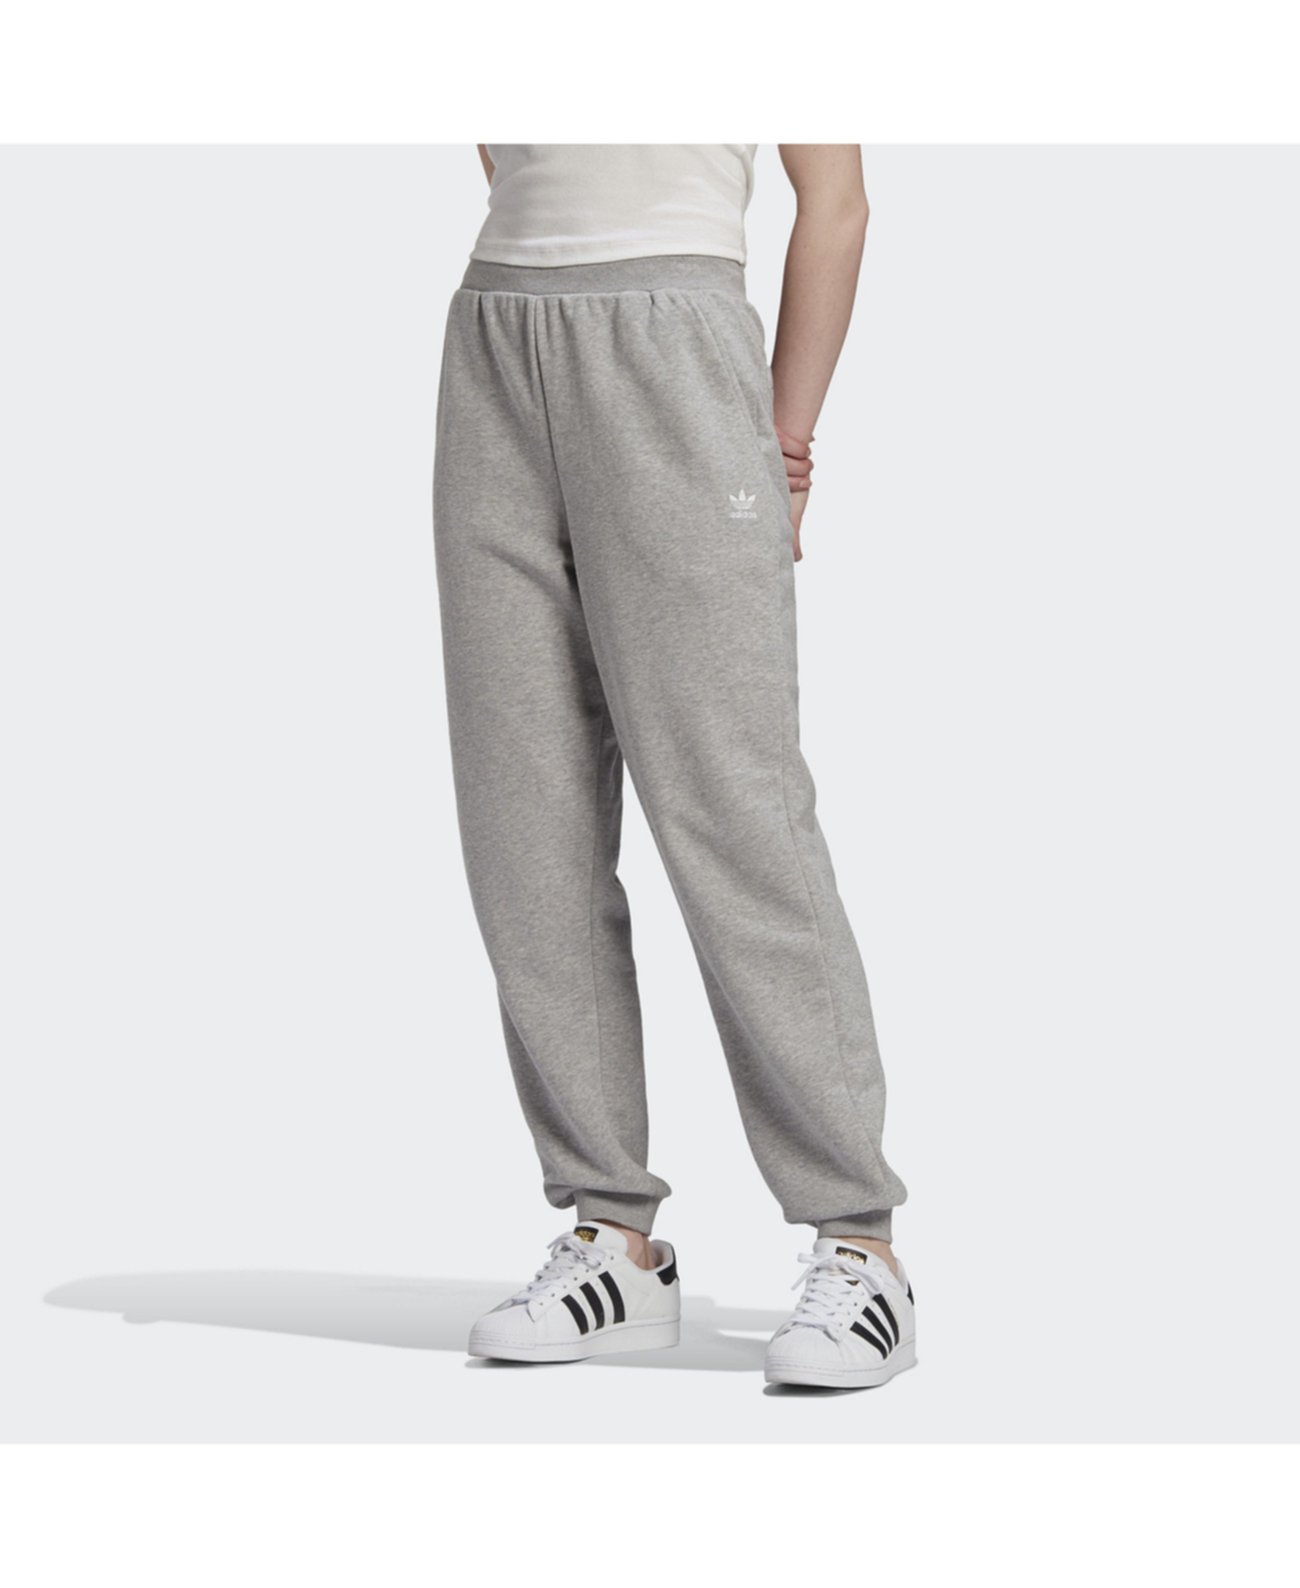 Женские брюки с манжетами Trefoil Essentials Adidas